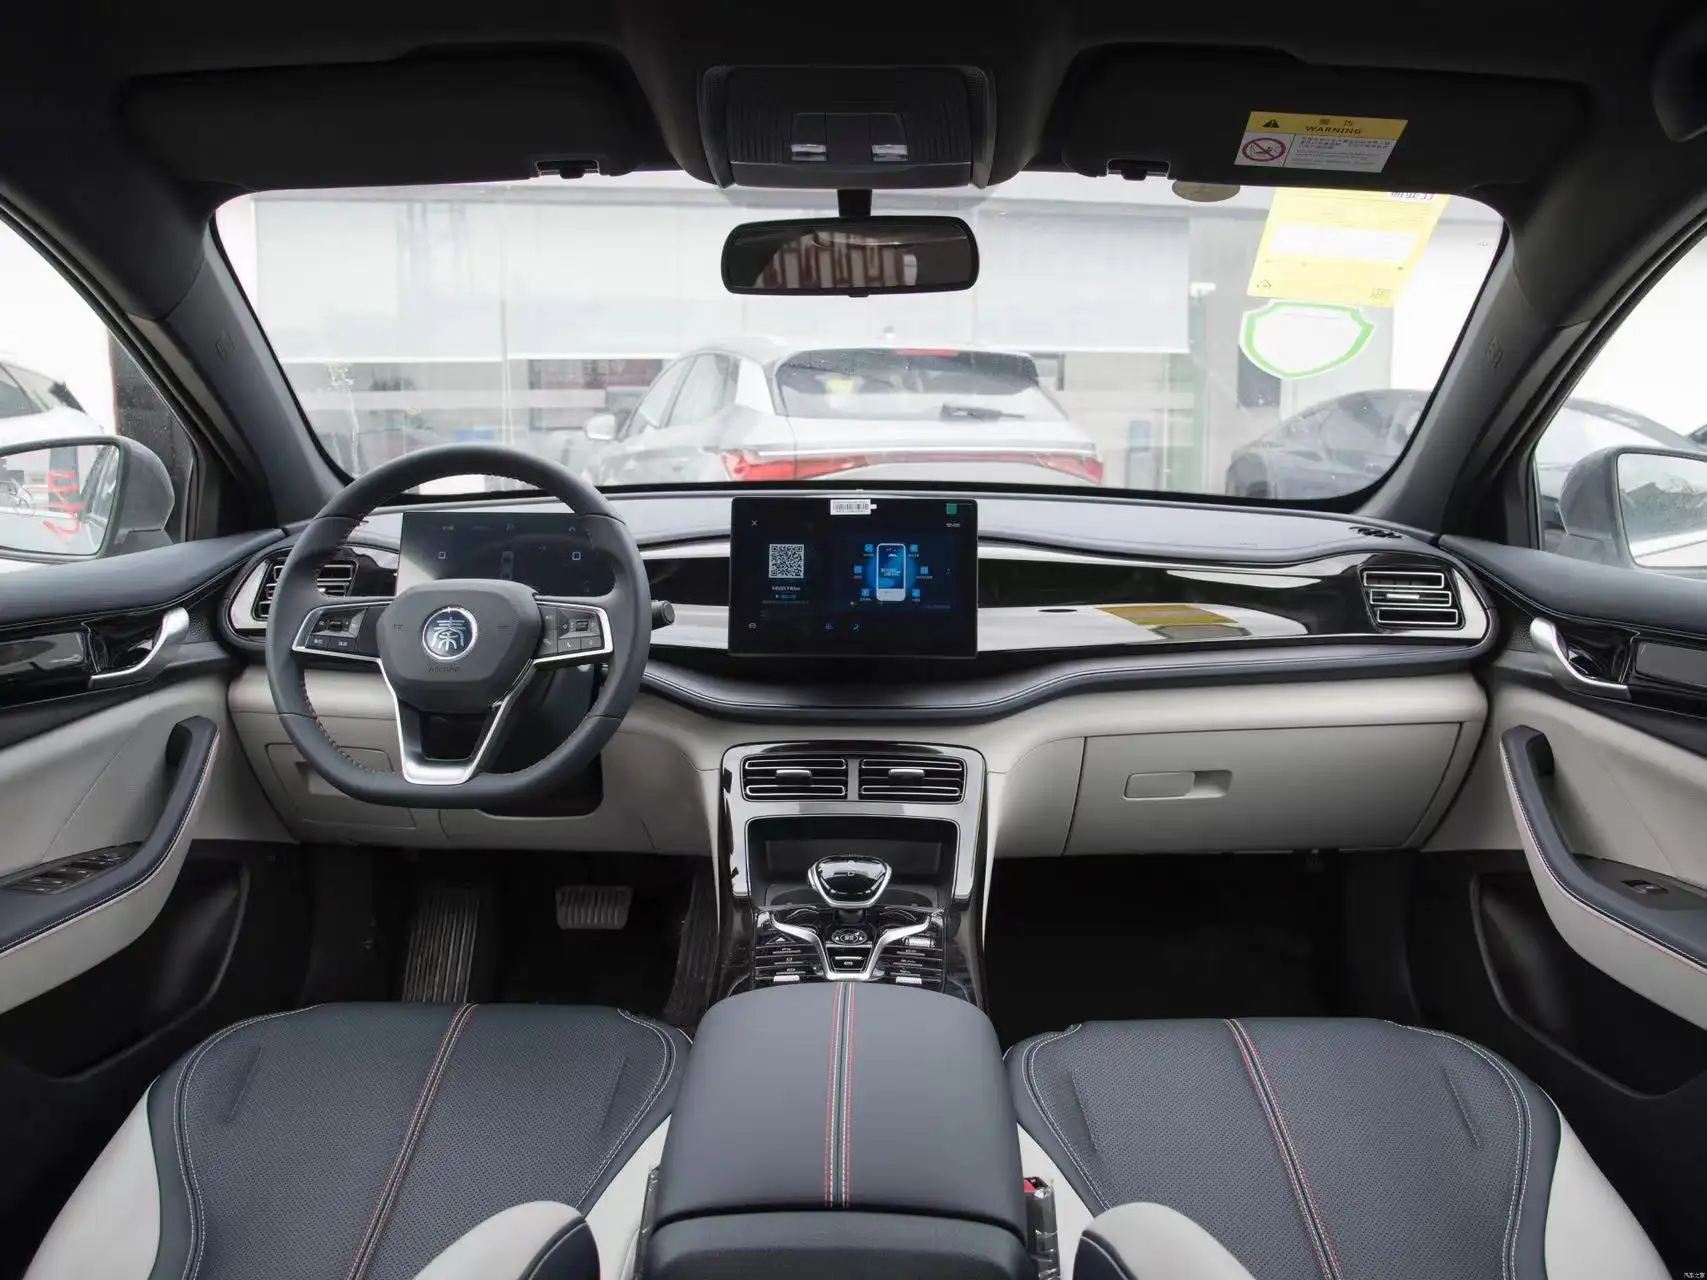 2023 Byd домашняя модель Qin Plus роскошный электромобиль новый высокопроизводительный 4 двери 5 мест, другие модели Tang Song Yuan